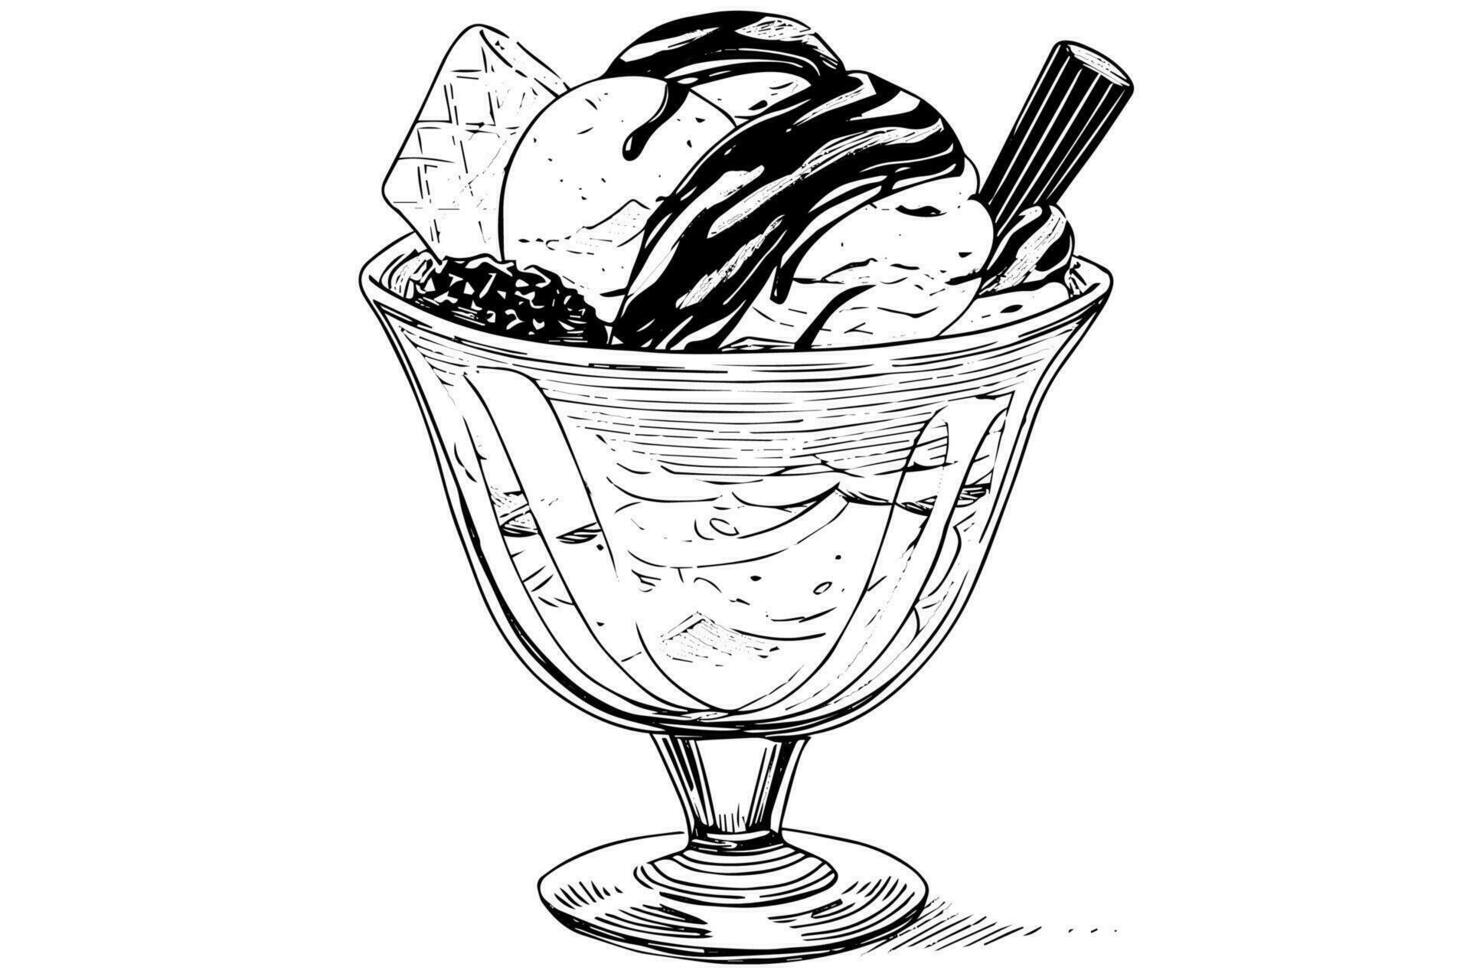 Eis Sahne Schaufeln mit Beeren und Wafer Stöcke im Glas Tasse. Tinte skizzieren graviert Vektor Illustration.